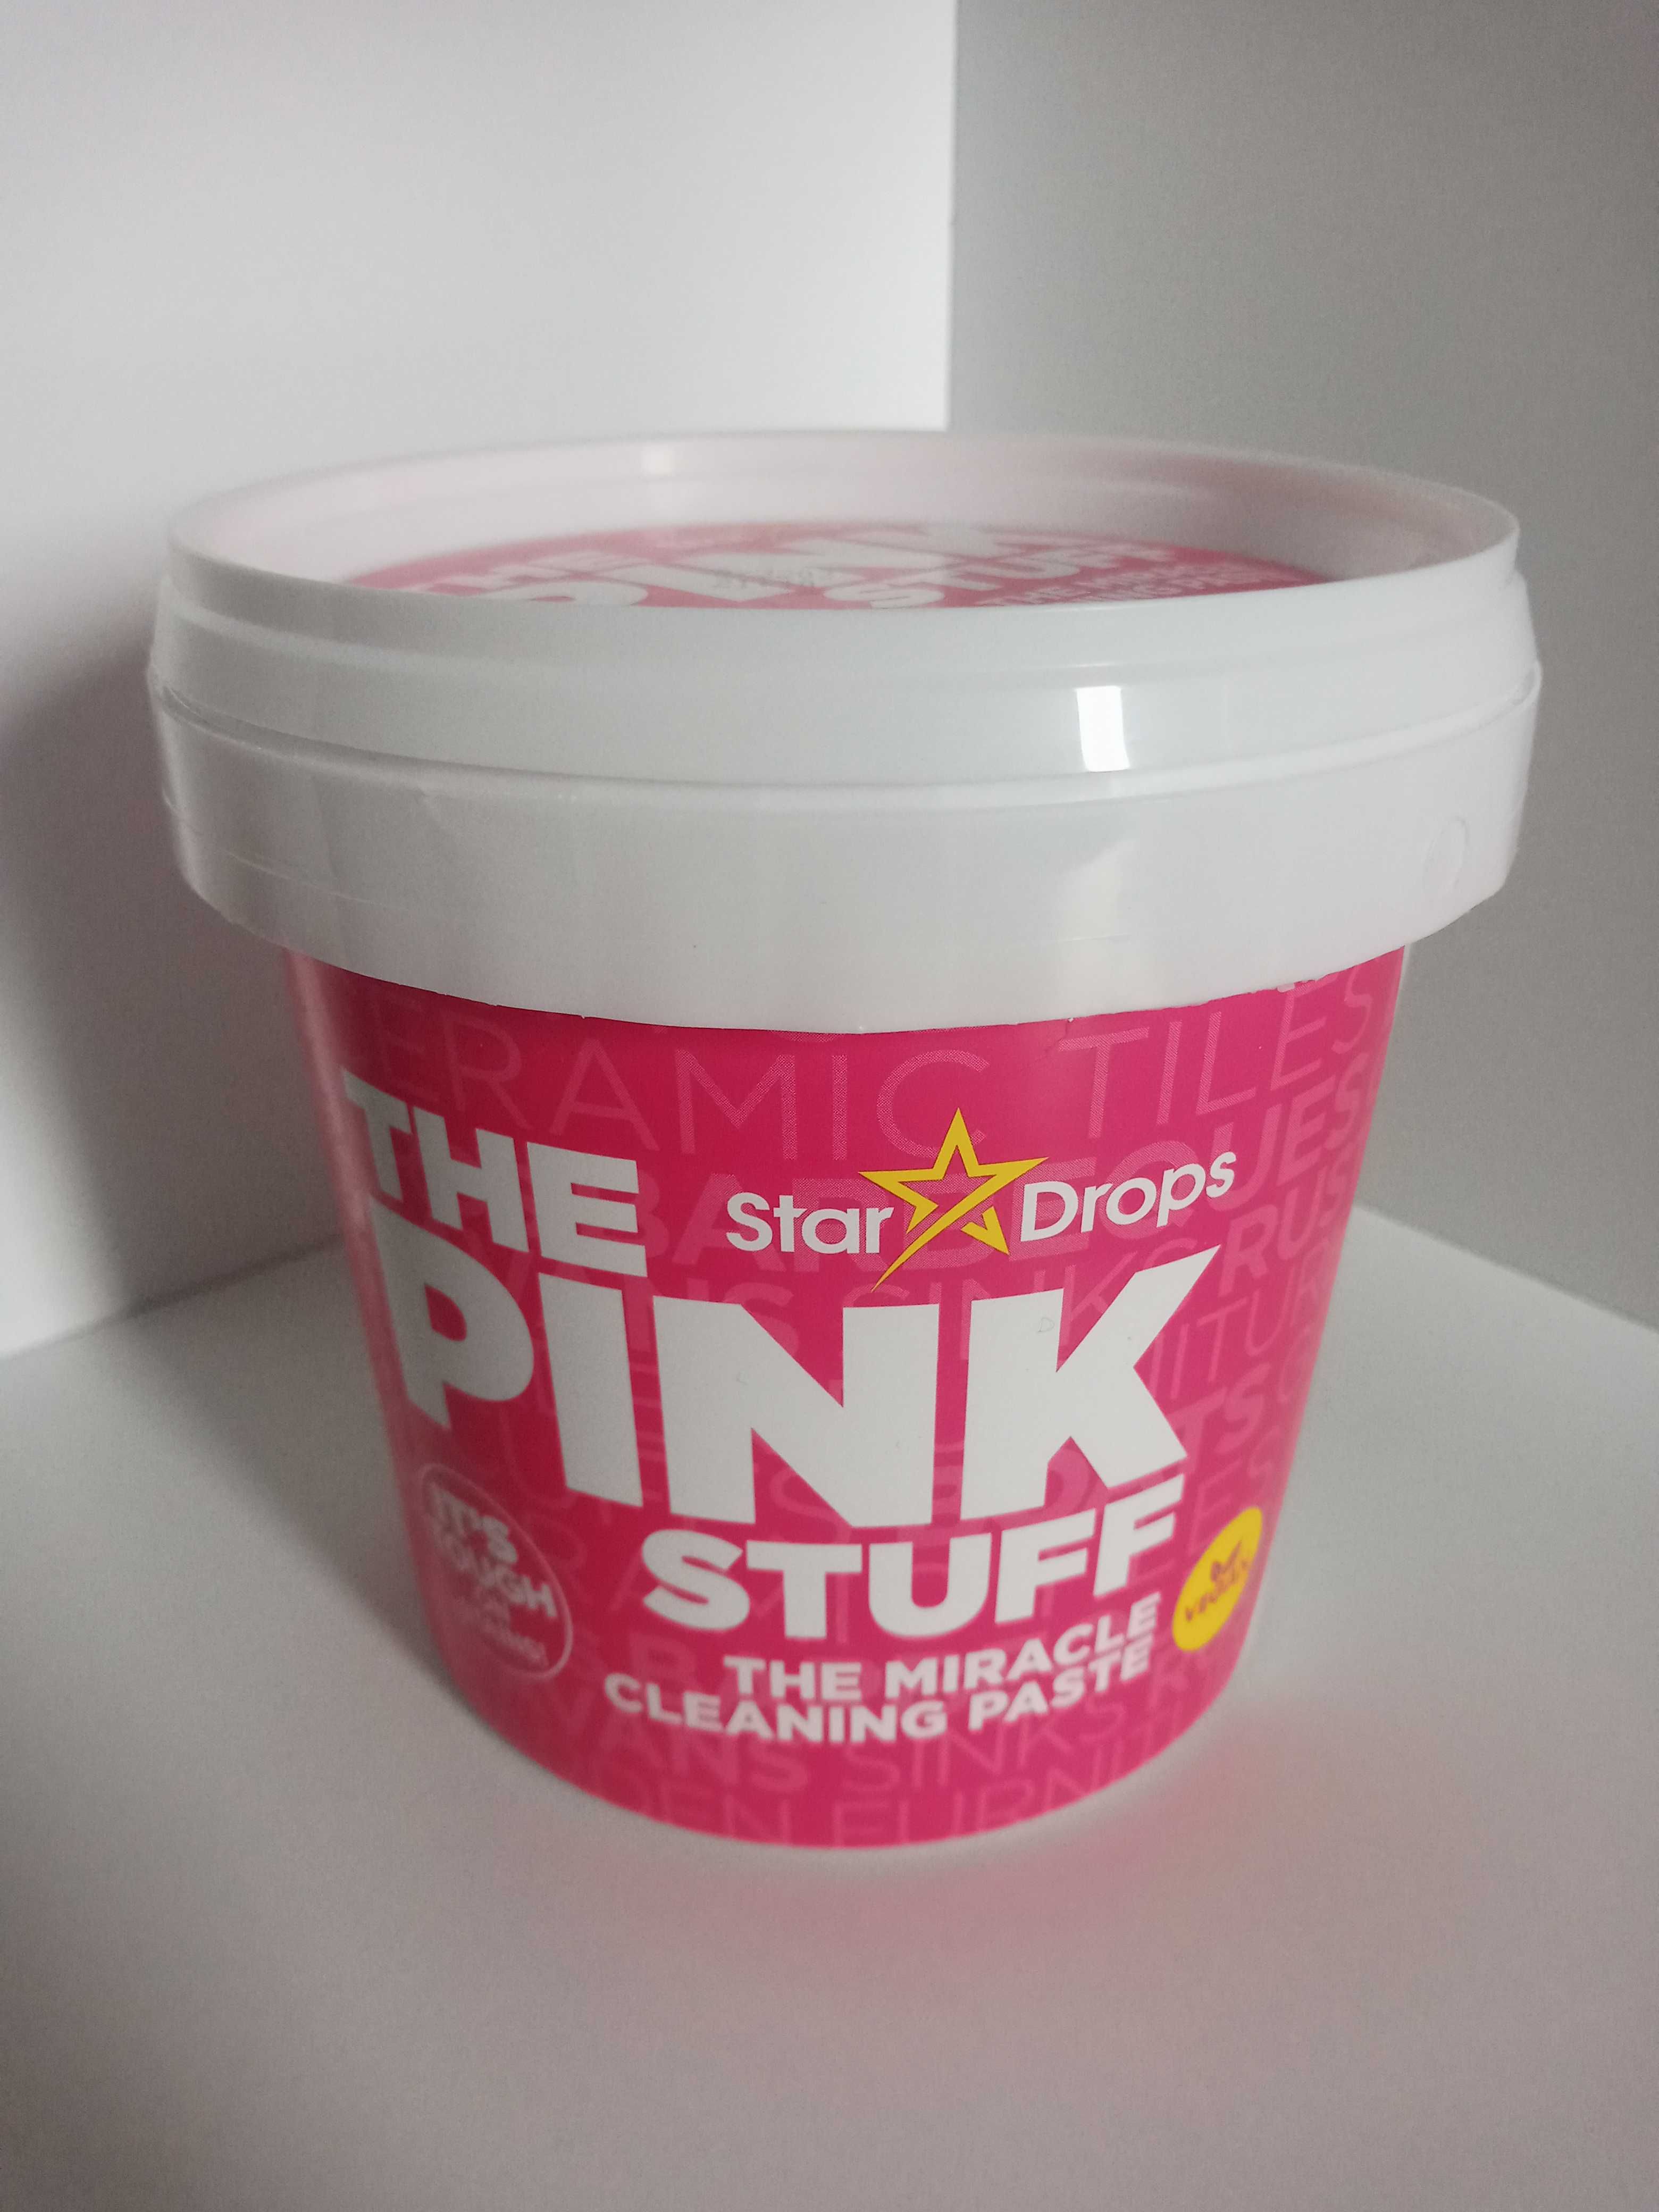 Pasta czyszcząca The Pink Stuff 850g